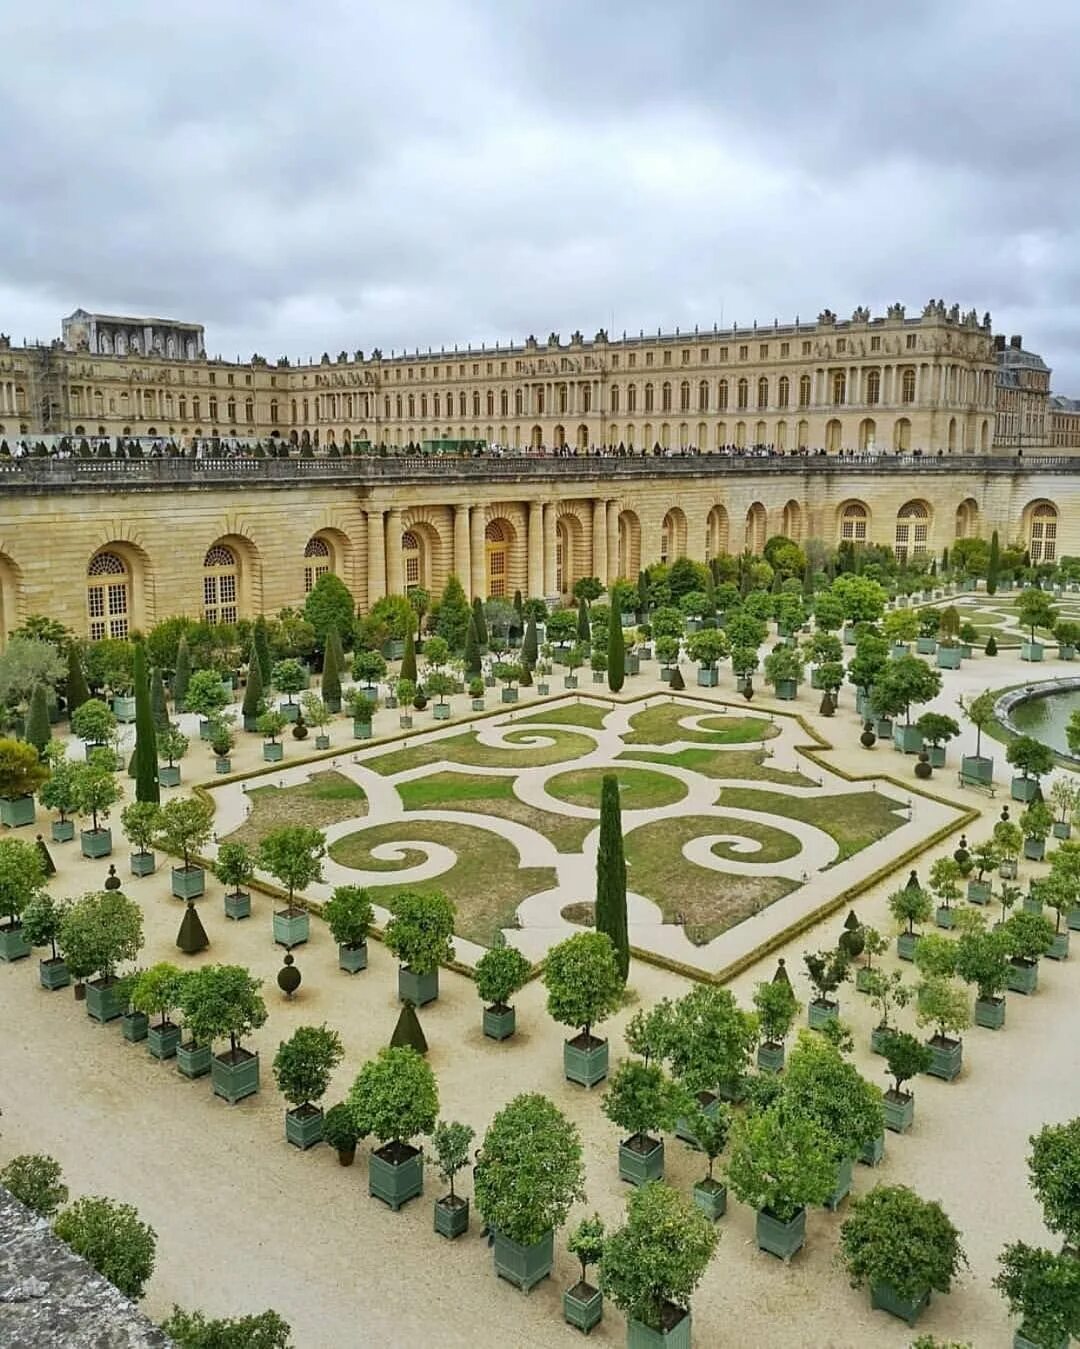 Chateau de versailles. Версаль дворец Франция. Версаль Париж Версальский дворец. Версаль дворцово-парковый ансамбль во Франции. Дворцовый комплекс Версаль.